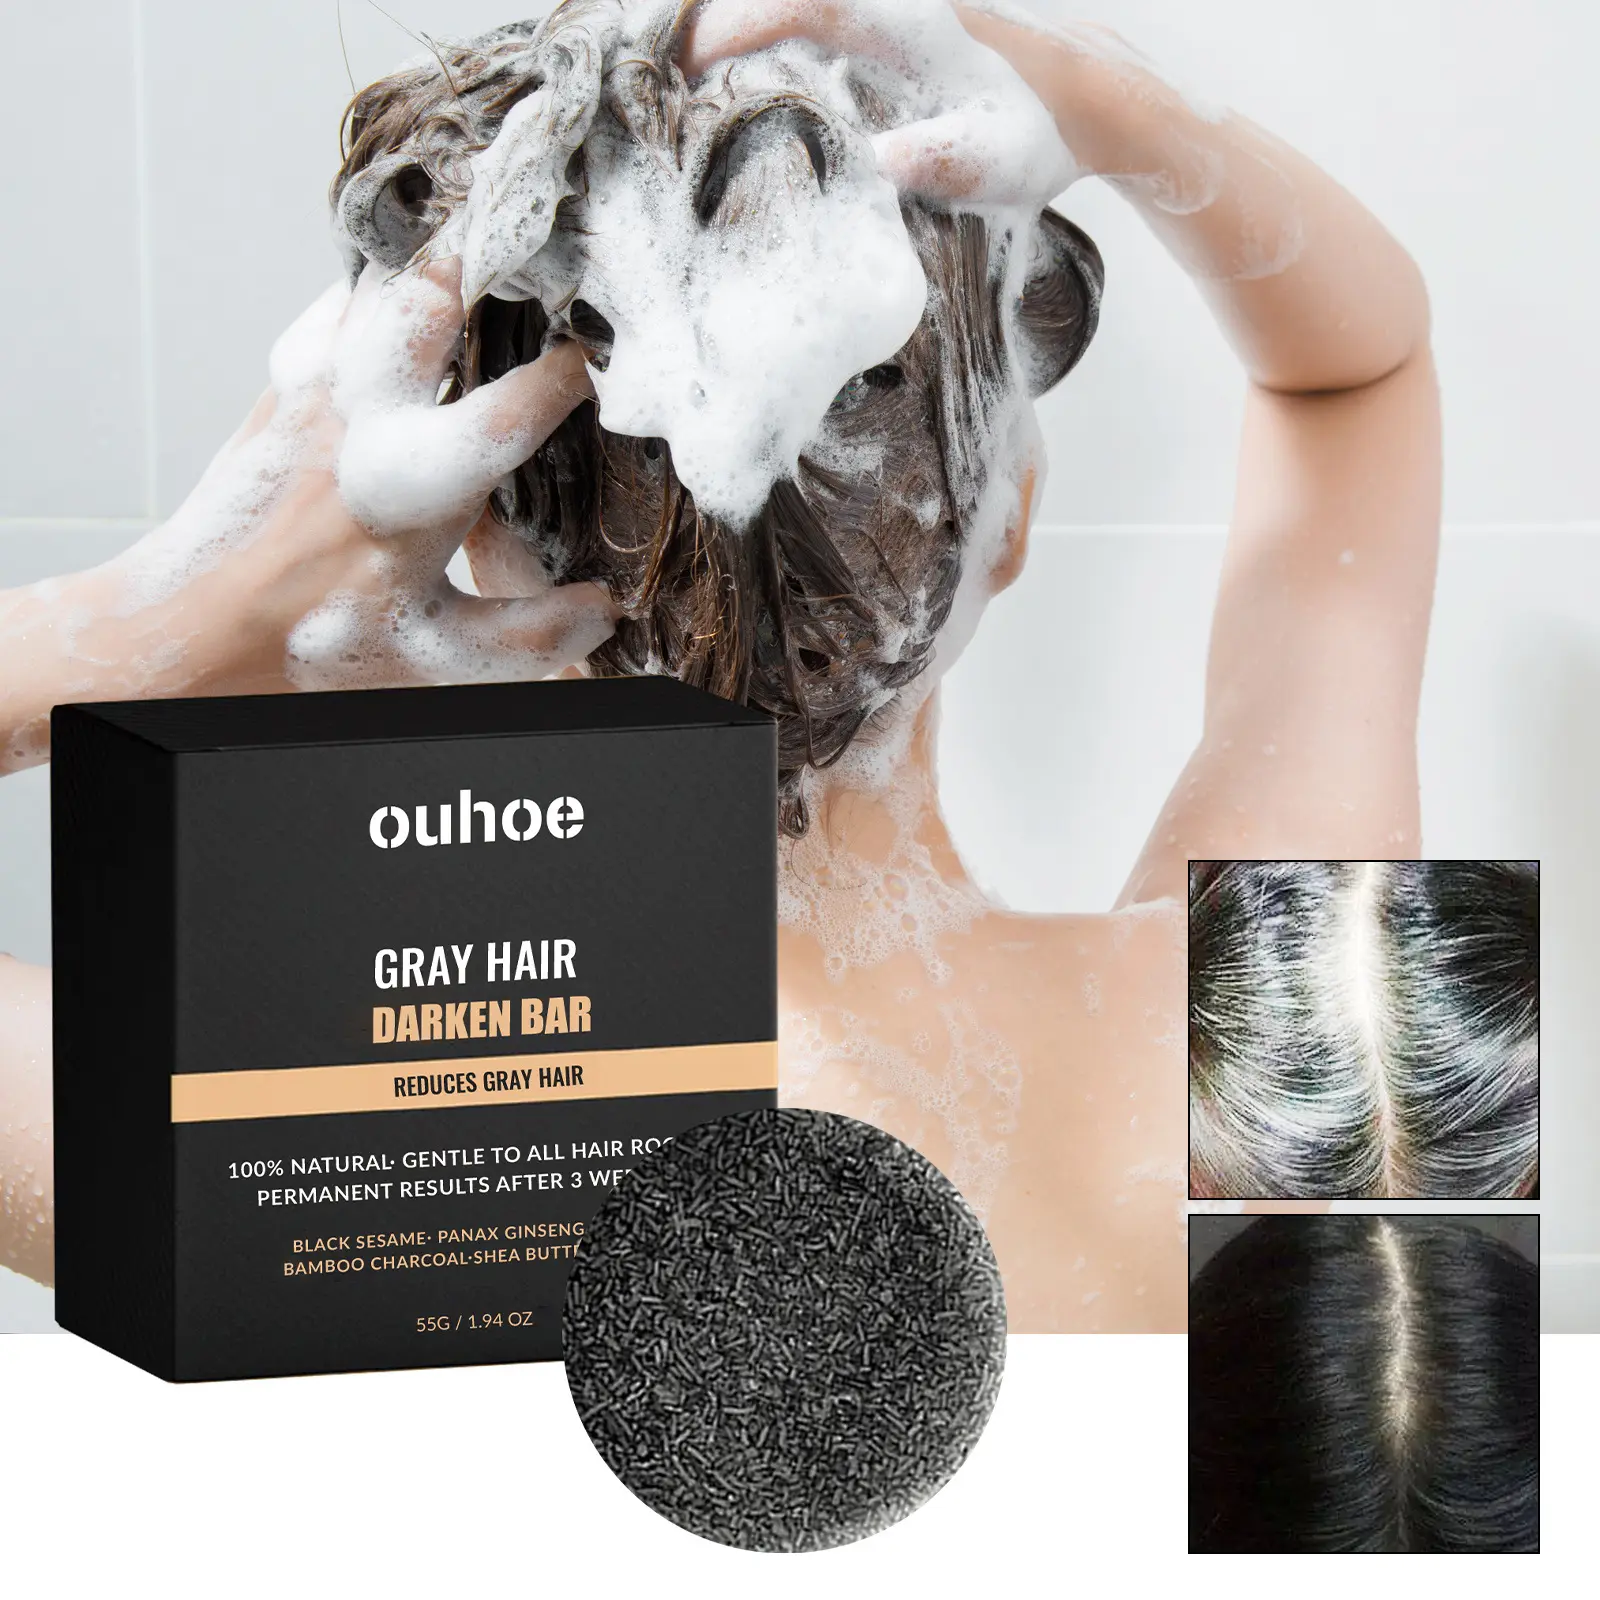 Populaire OUHOE 100% Naturel Permanent Assombrissement Cheveux Savon Shampooing Couverture Gris Cheveux Bar Savon